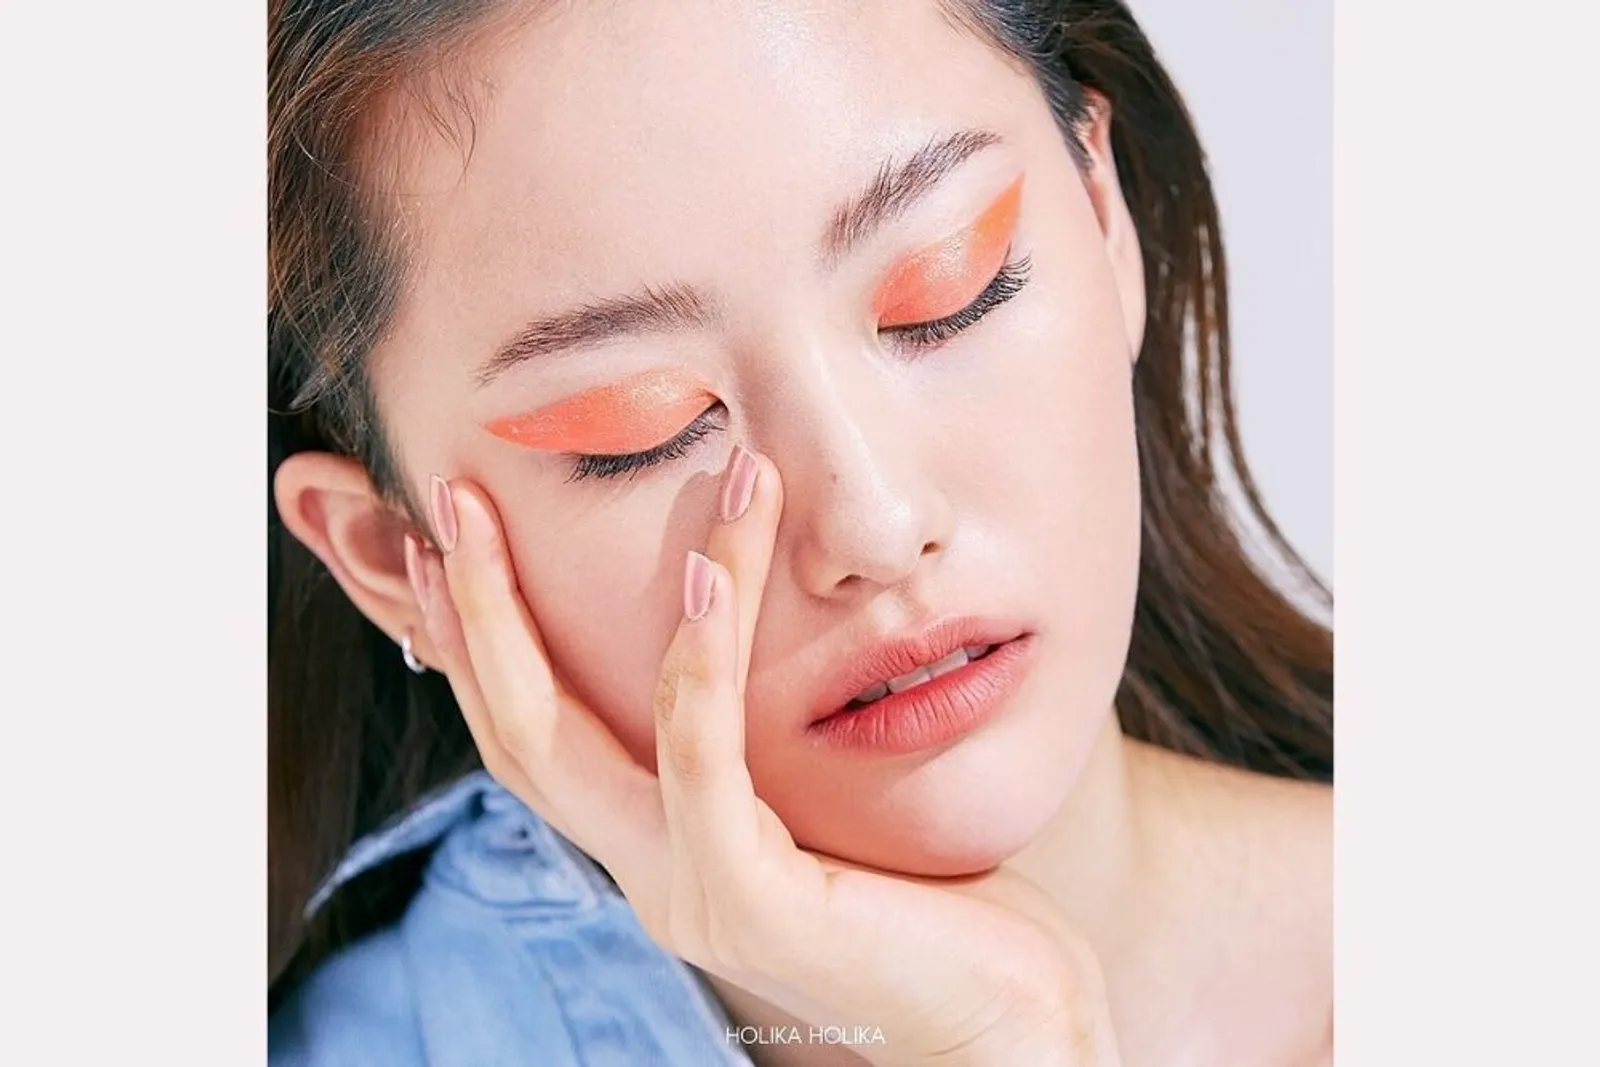 Buat yang Baru Belajar Makeup, Ini Eyeshadow yang Cocok untuk Kamu